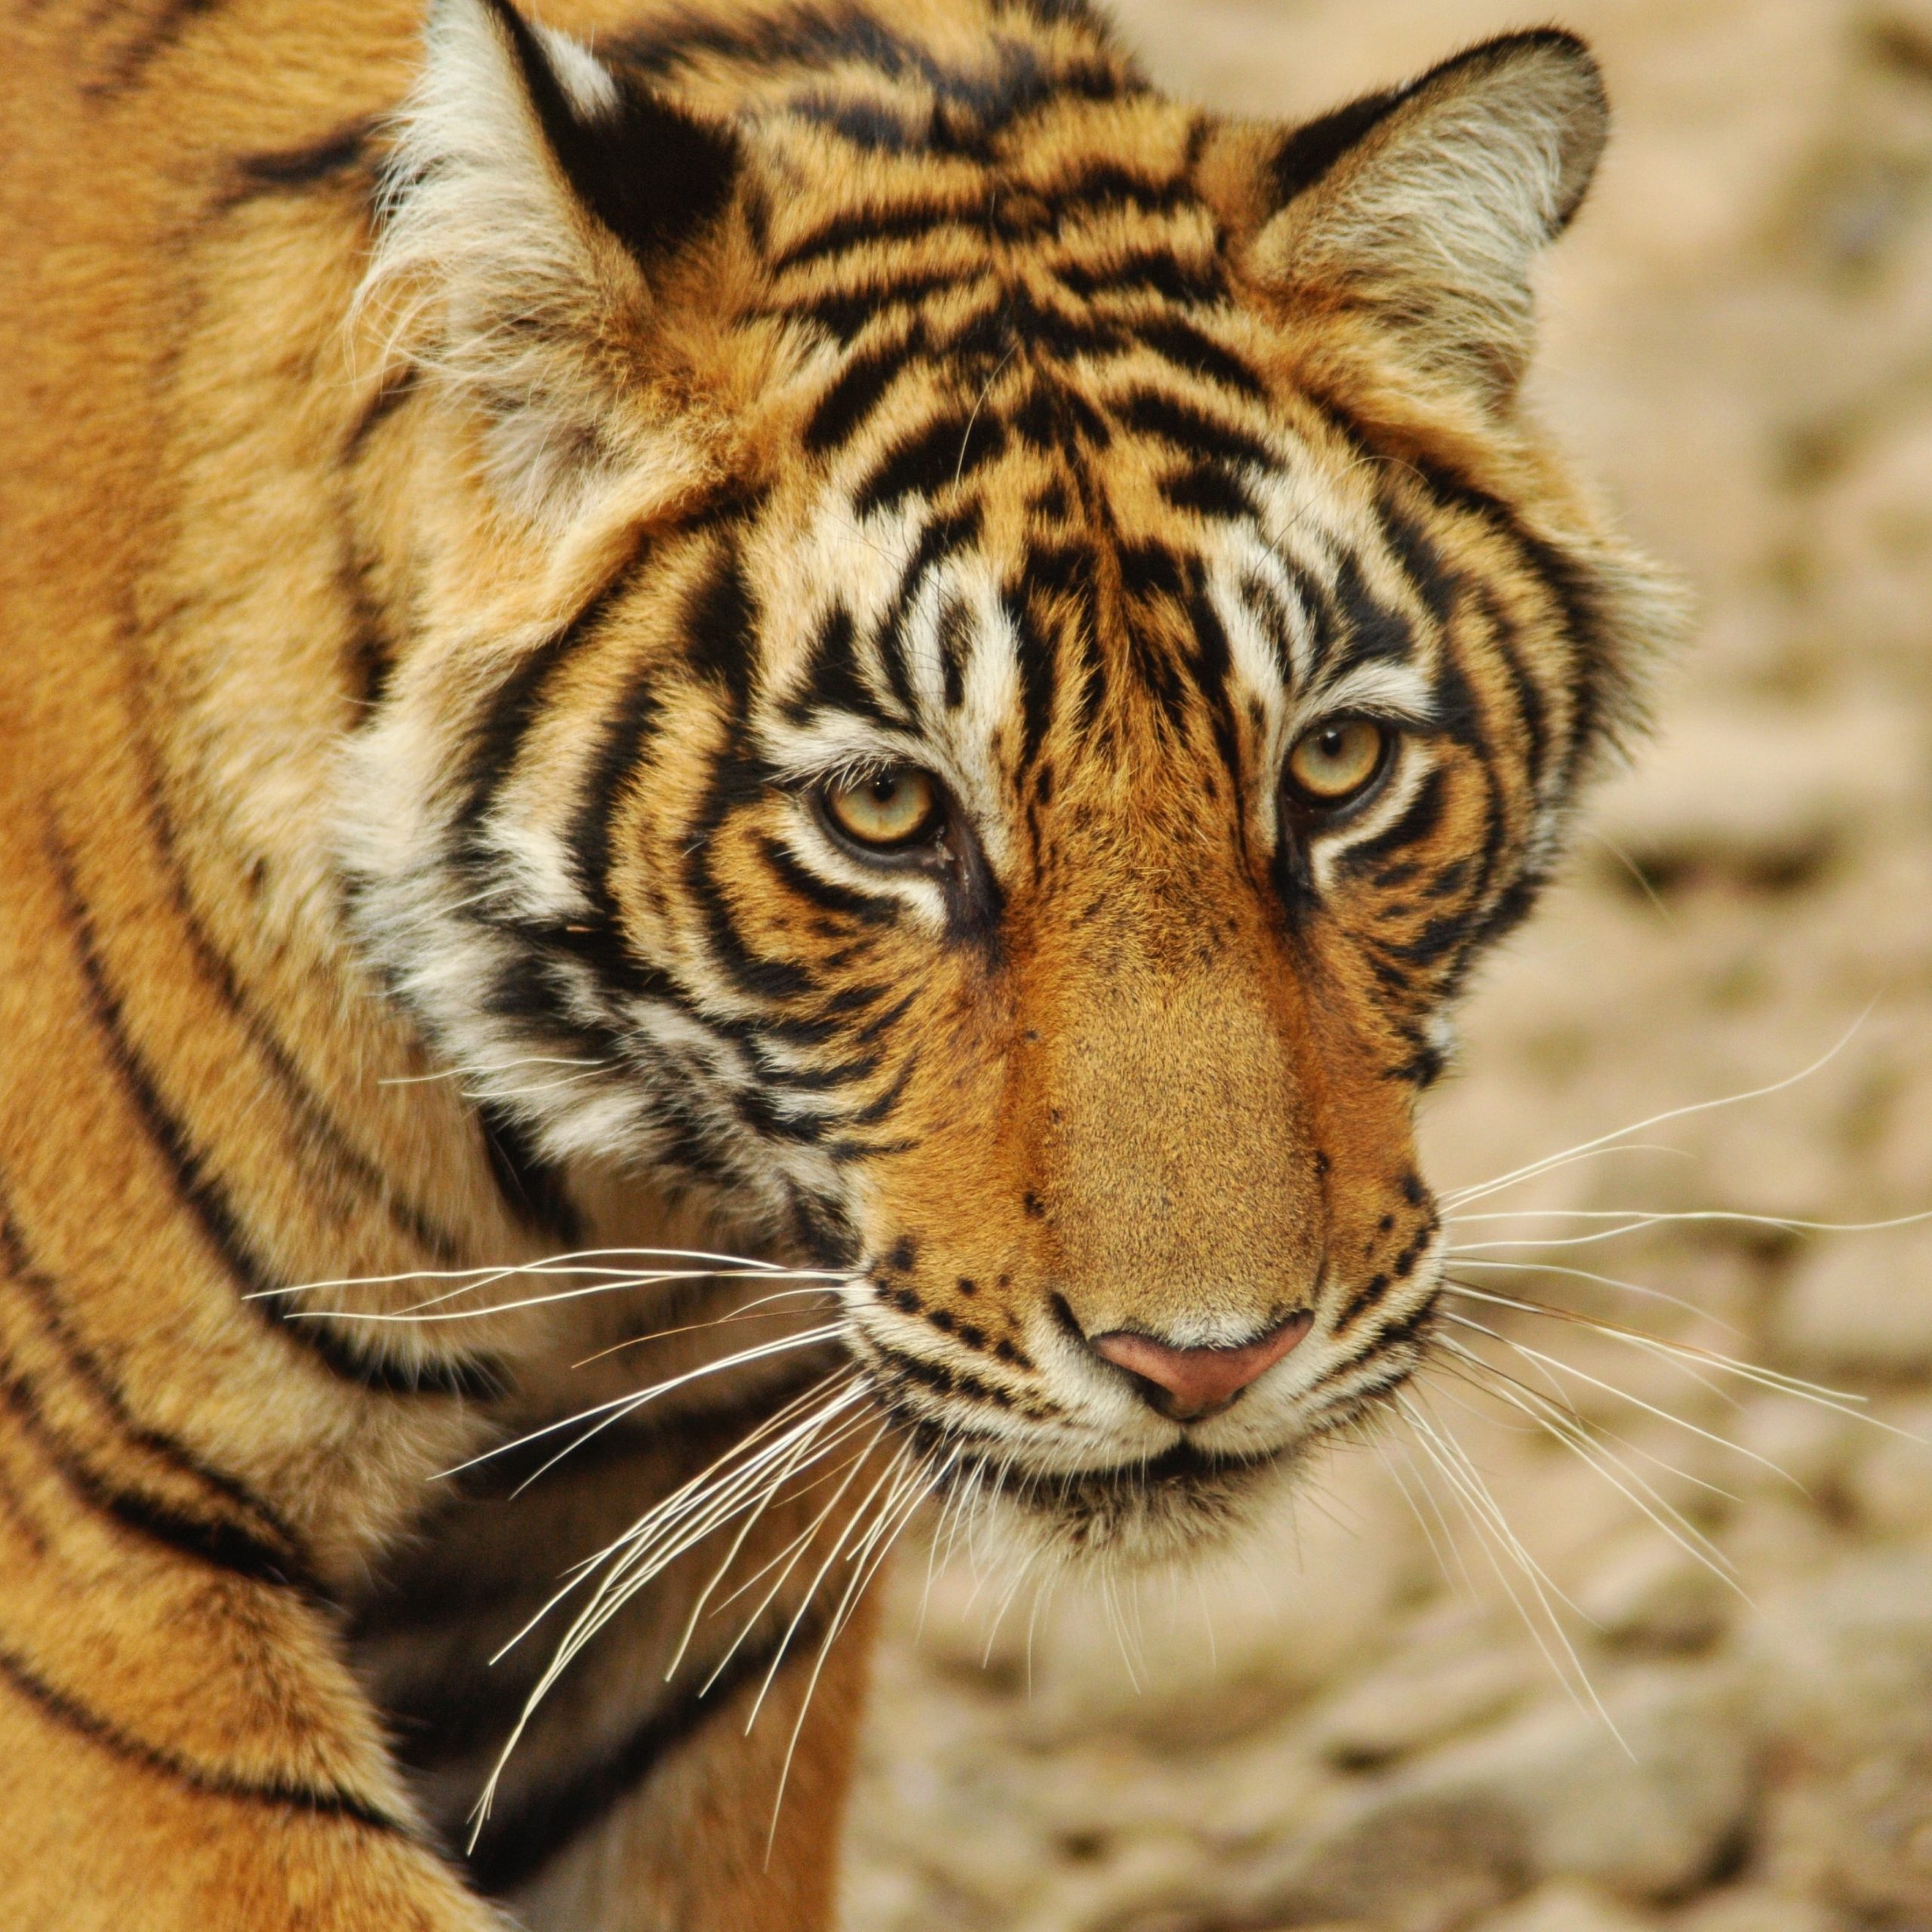 Tigers Abode Wildlife tour